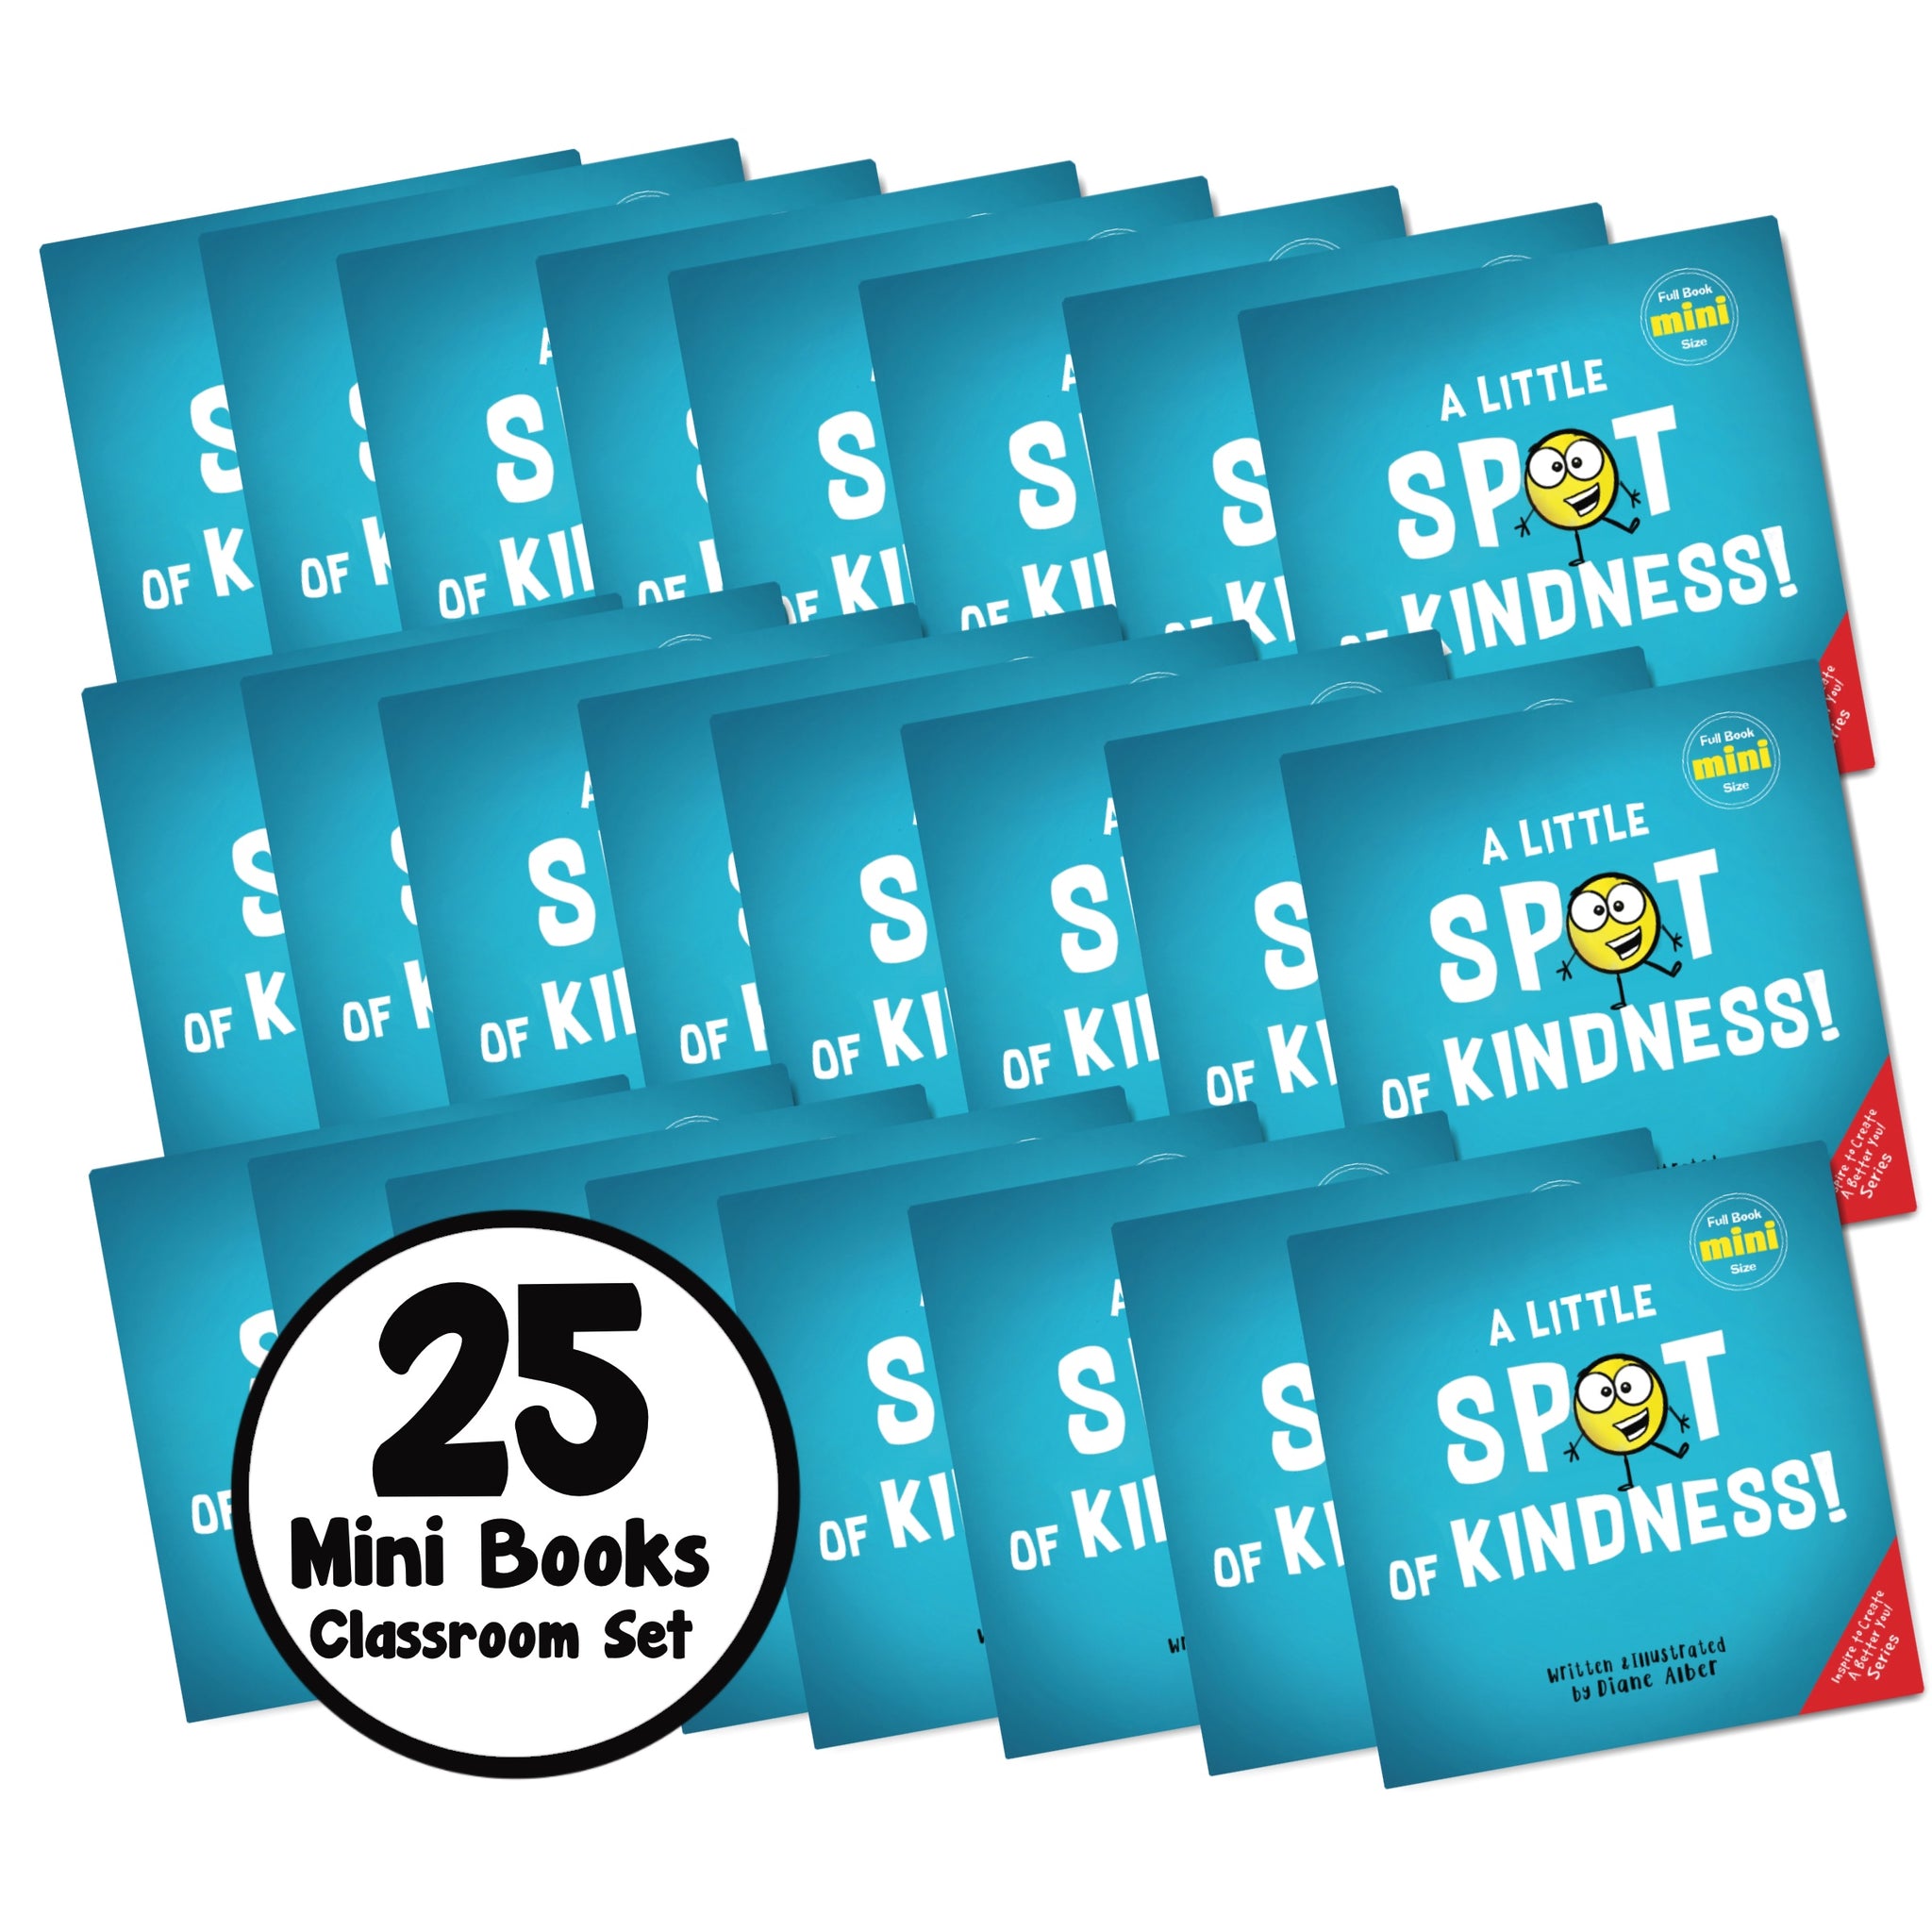 25 Mini Books Classroom Set Kindness SPOT